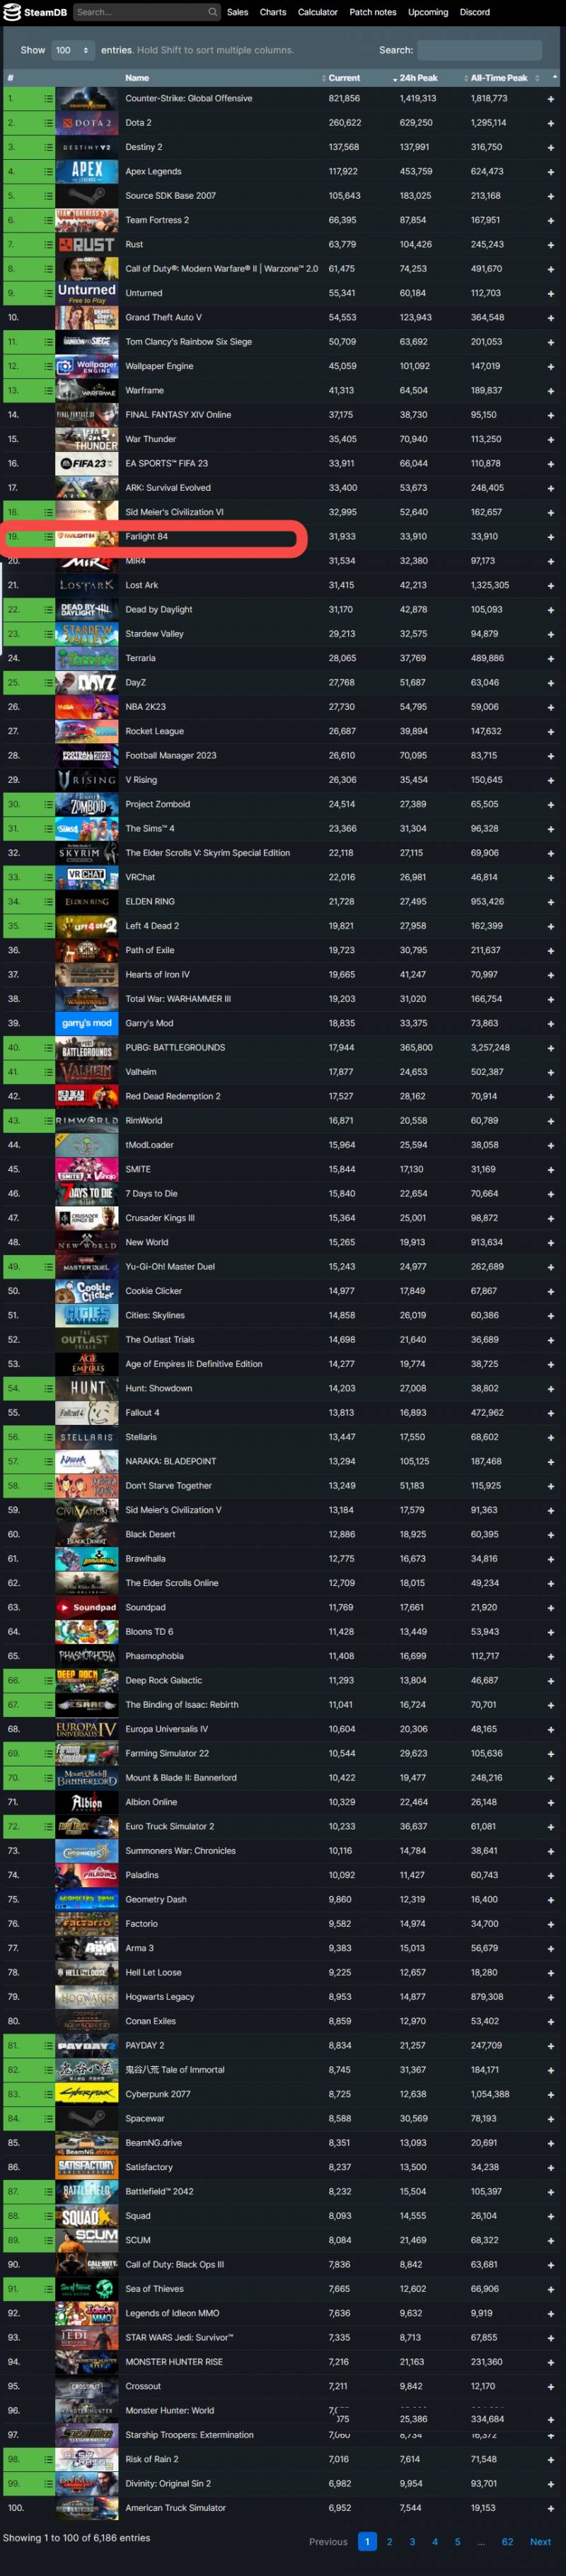 edmunddzhang打造的跨平台竞技之作，勇夺Steam Top 20宝座！